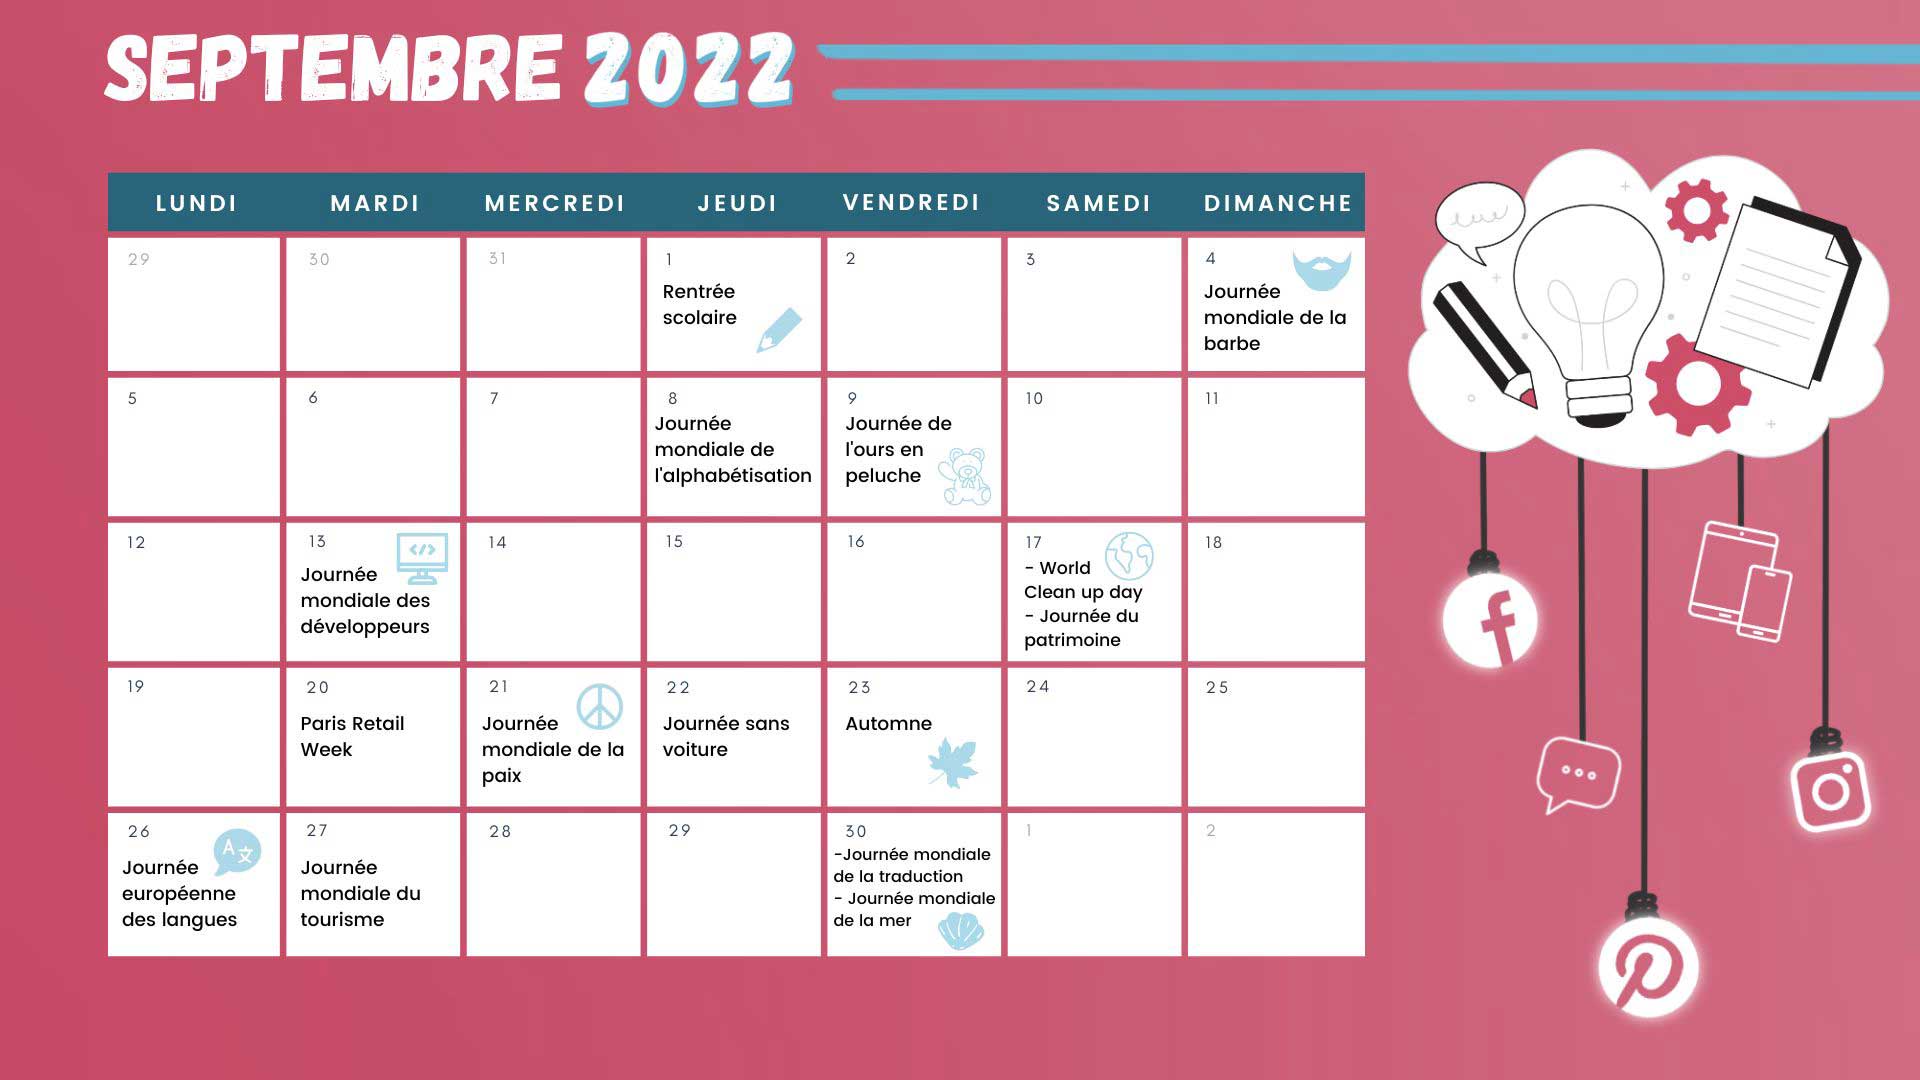 Retrouvez tous les événements du mois de septembre grâce à votre calendrier marketing 2022 !